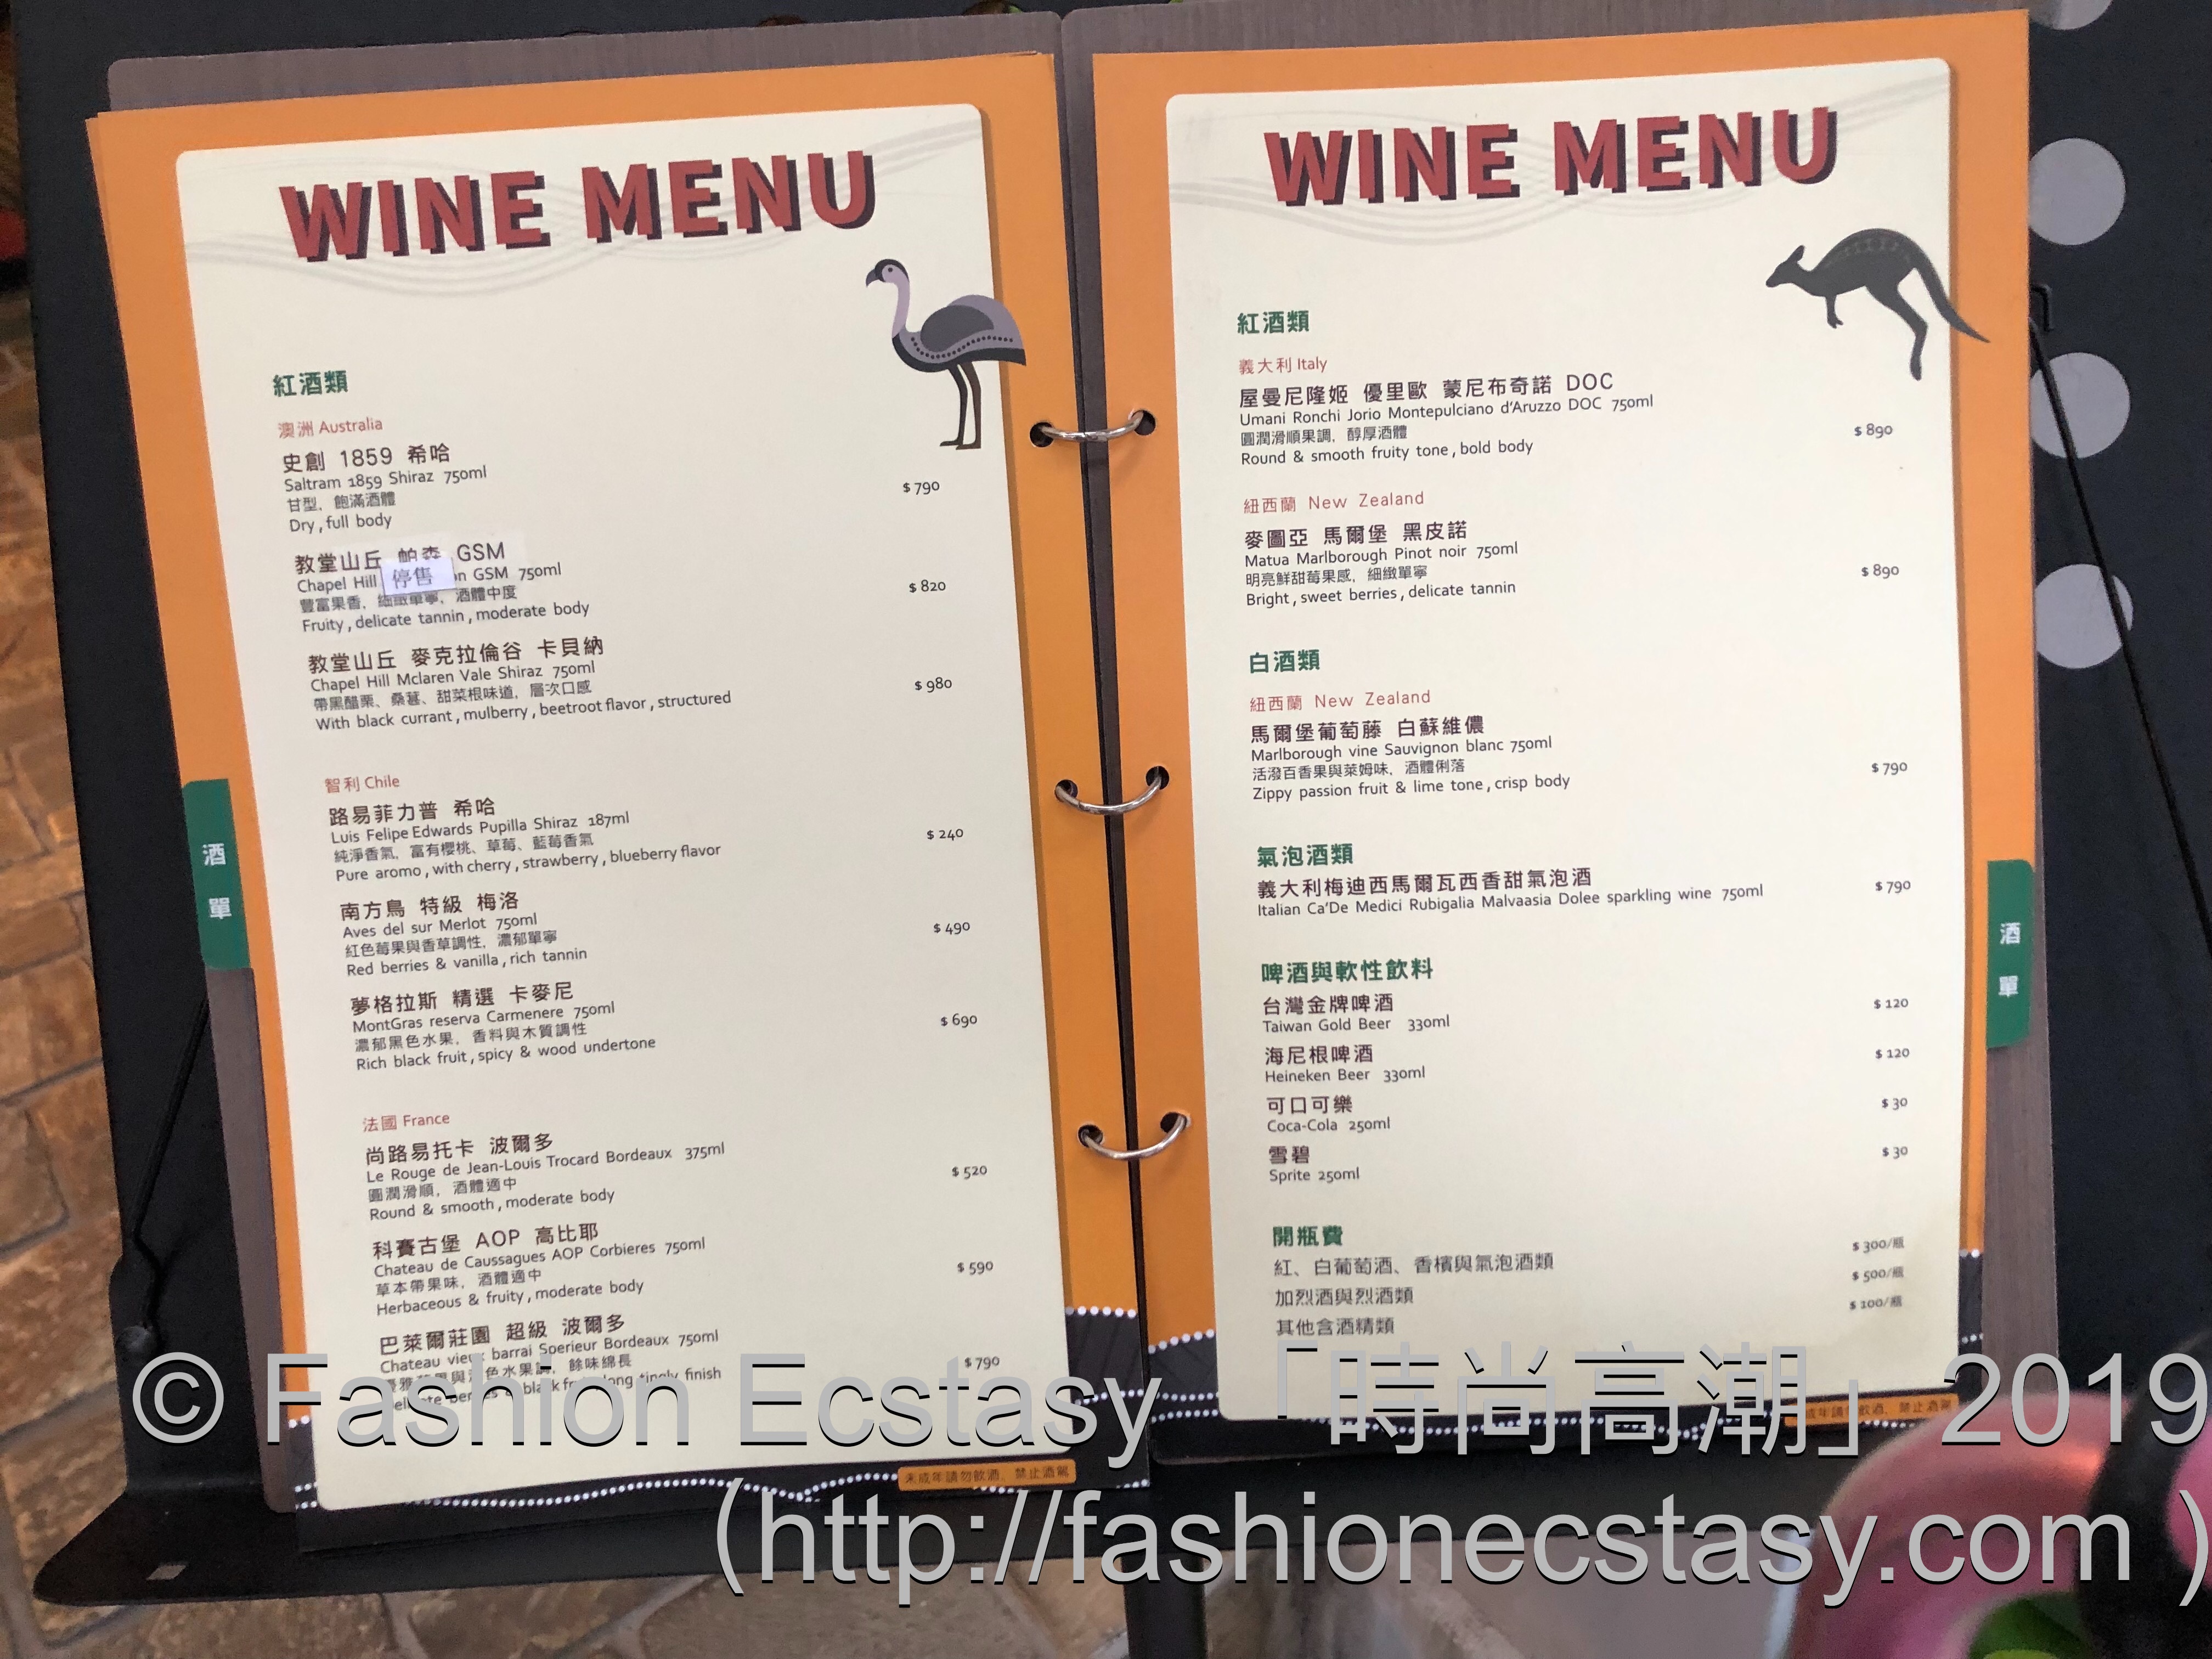 凱恩斯岩燒餐廳(大安店) 菜單 Menù / Cairns Stone Grill Restaurant Taipei menu